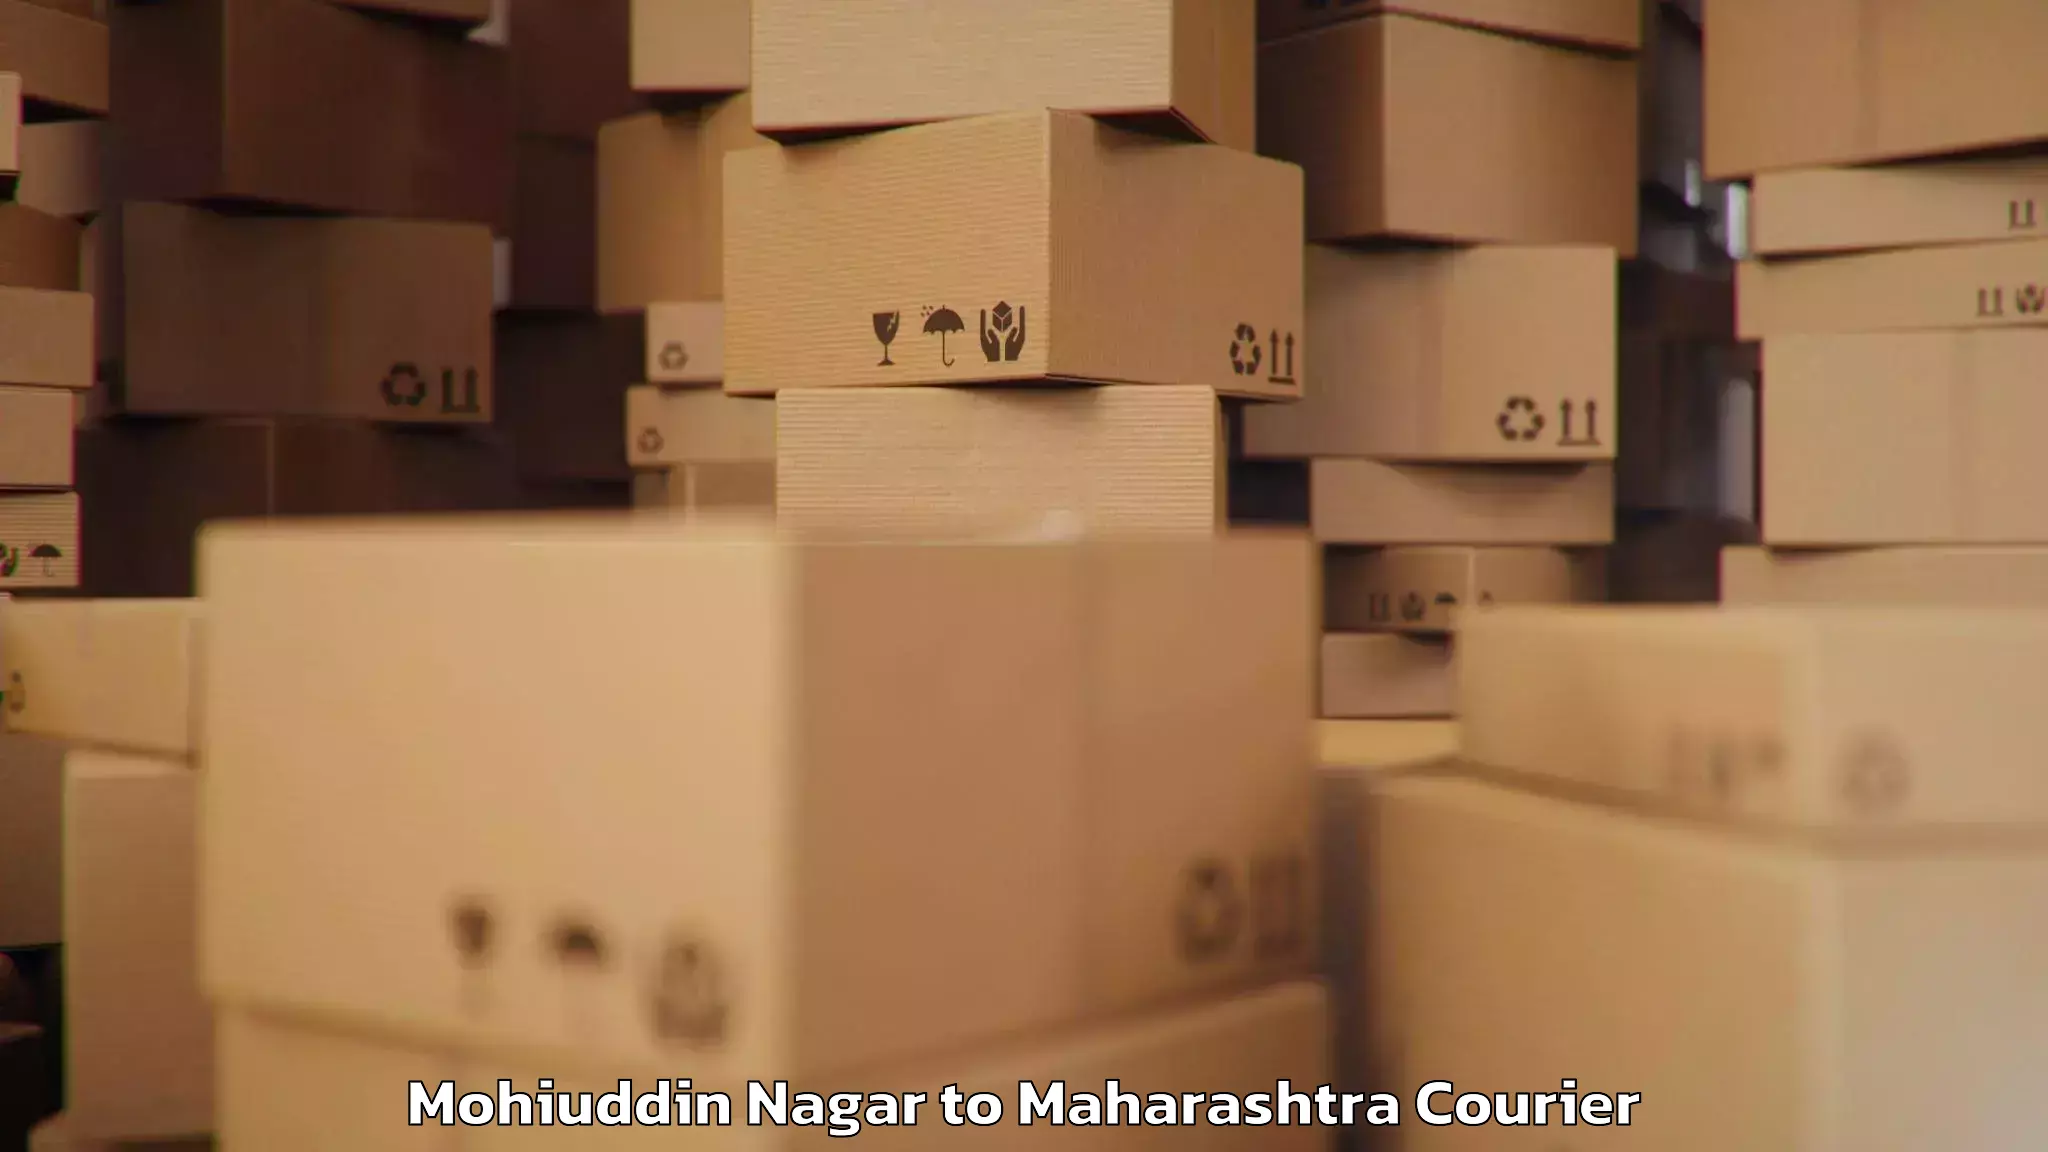 Baggage courier advice Mohiuddin Nagar to Ghatanji